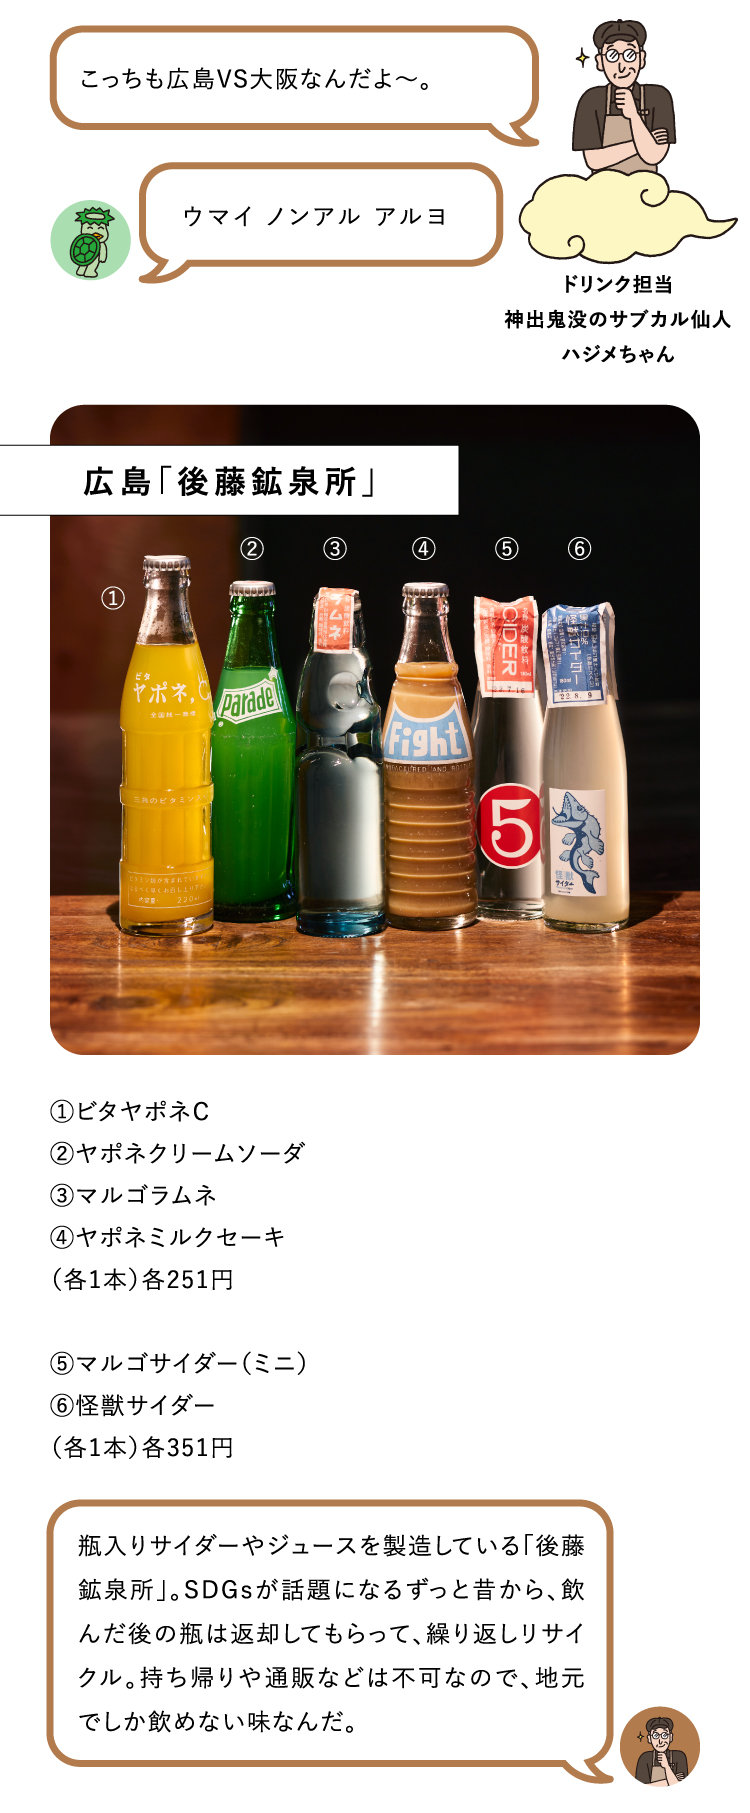 ウマイ ノンアル アルヨ　こっちも広島VS大阪なんだよ～。
ドリンク担当
神出鬼没のサブカル仙人
ハジメちゃん
瓶入りサイダーやジュースを製造している「後藤鉱泉所」。SDGsが話題になるずっと昔から、飲んだ後の瓶は返却してもらって、繰り返しリサイクル。持ち帰りや通販などは不可なので、地元でしか飲めない味なんだ。①ビタヤポネC
②ヤポネクリームソーダ
③マルゴラムネ
④ヤポネミルクセーキ
（各1本）各251円

⑤マルゴサイダー（ミニ）
⑥怪獣サイダー
（各1本）各351円